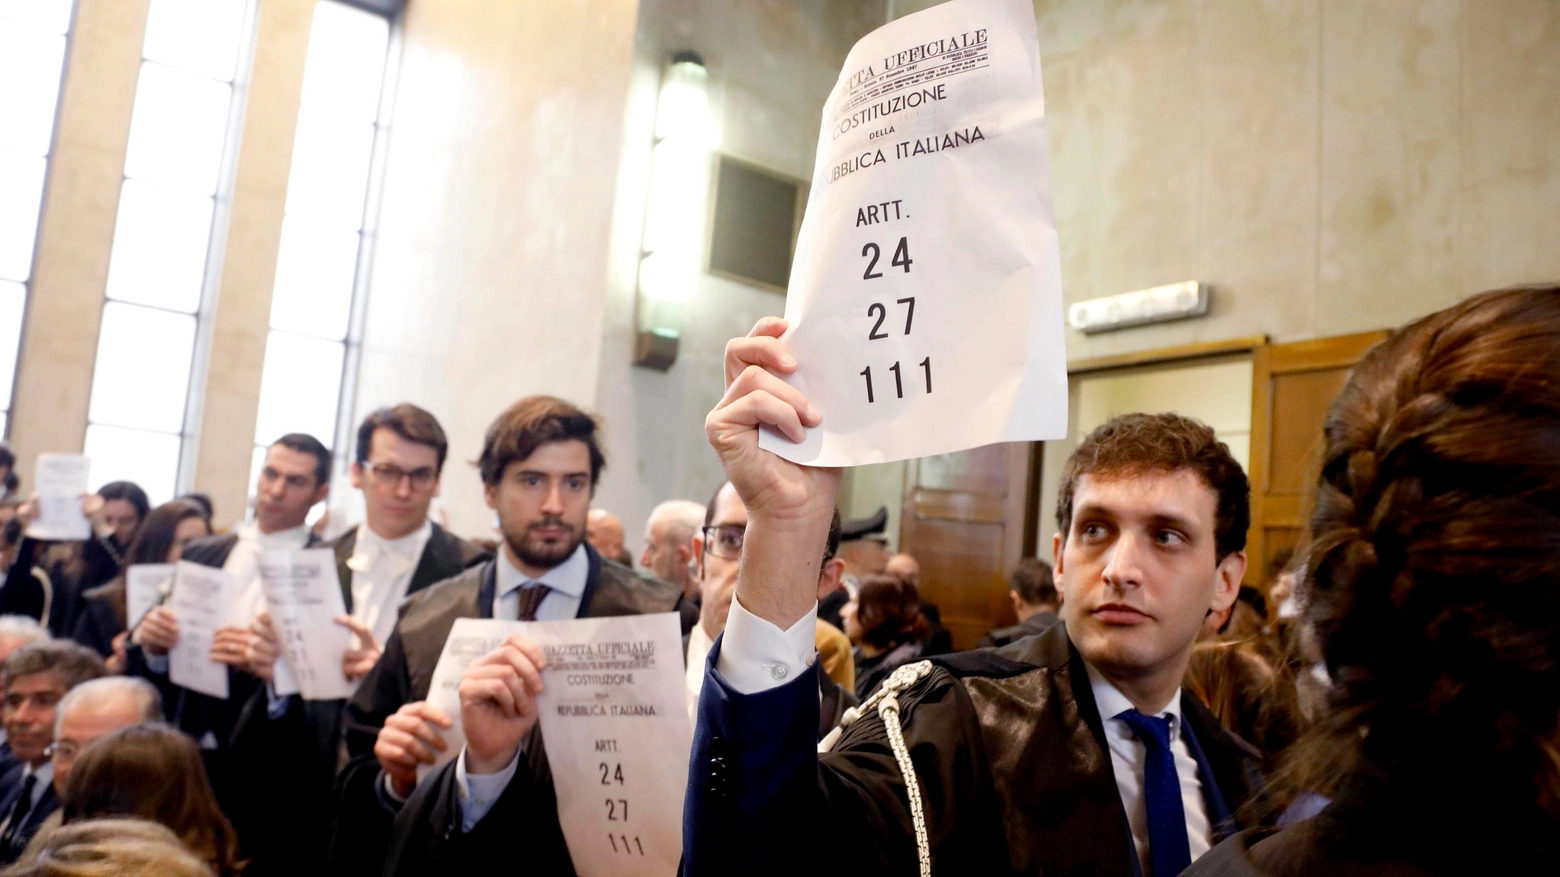 Milano, inaugurazione anno giudiziario: avvocati in protesta